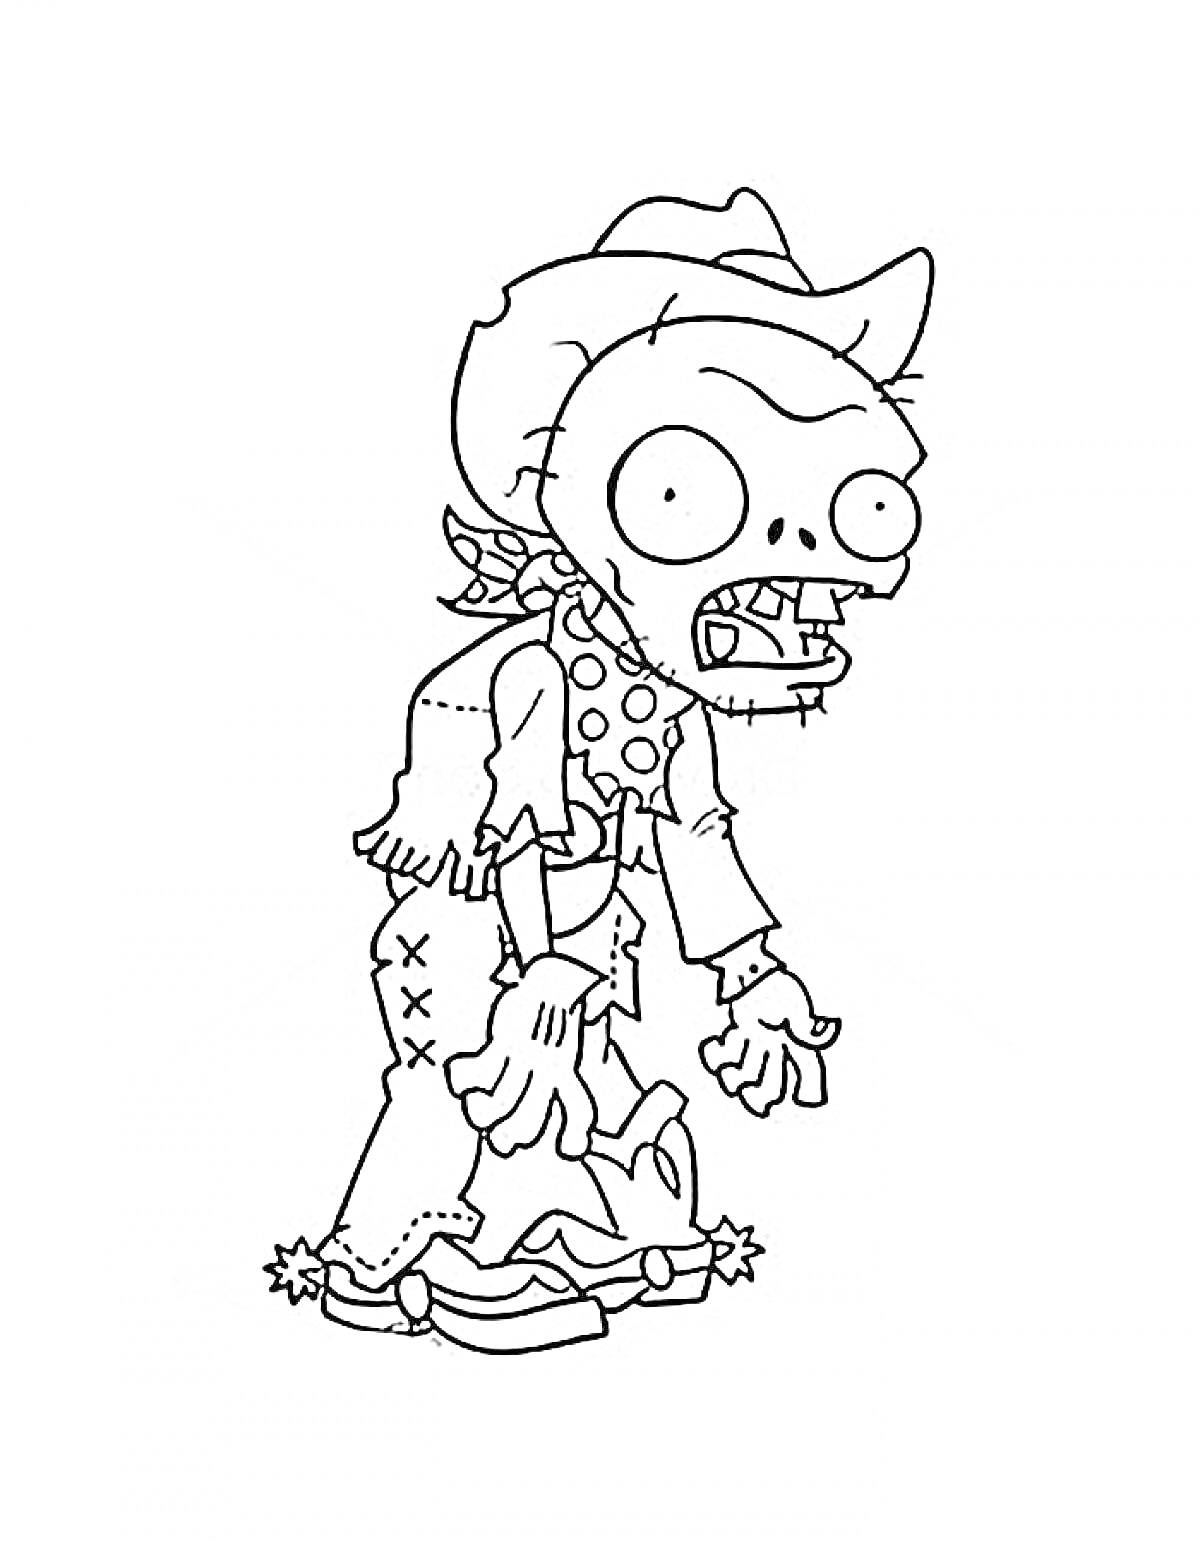 Зомби-ковбой в шляпе, рубашке, шейном платке и поношенных брюках с дырками